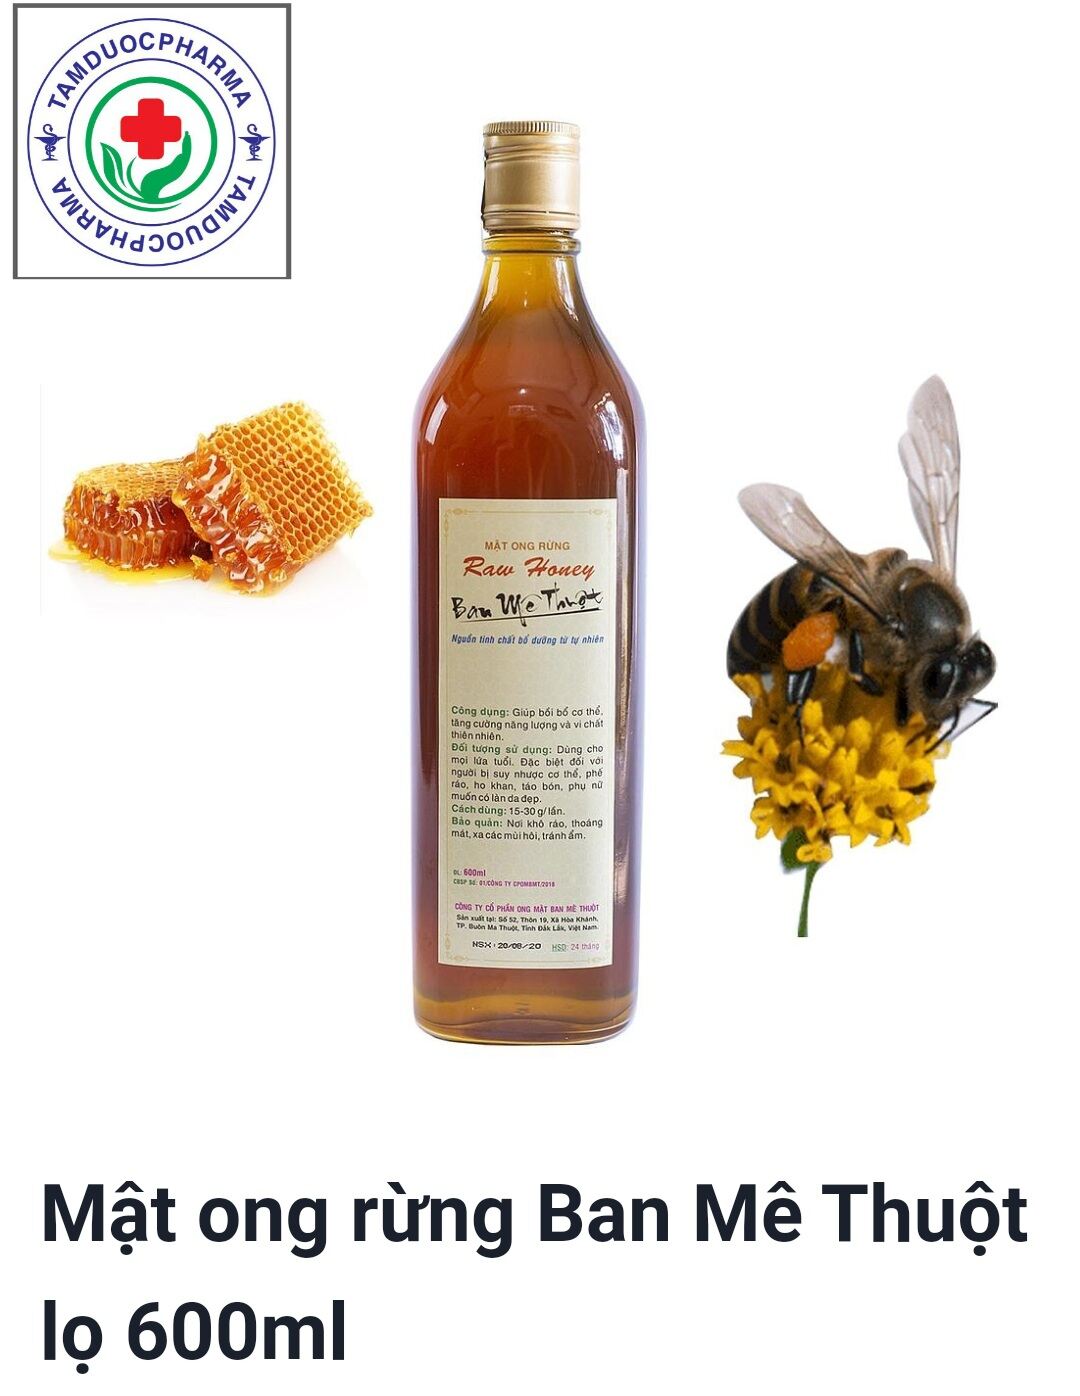 Mật ong rừng Ban Mê Thuật chính hãng chai 600ml